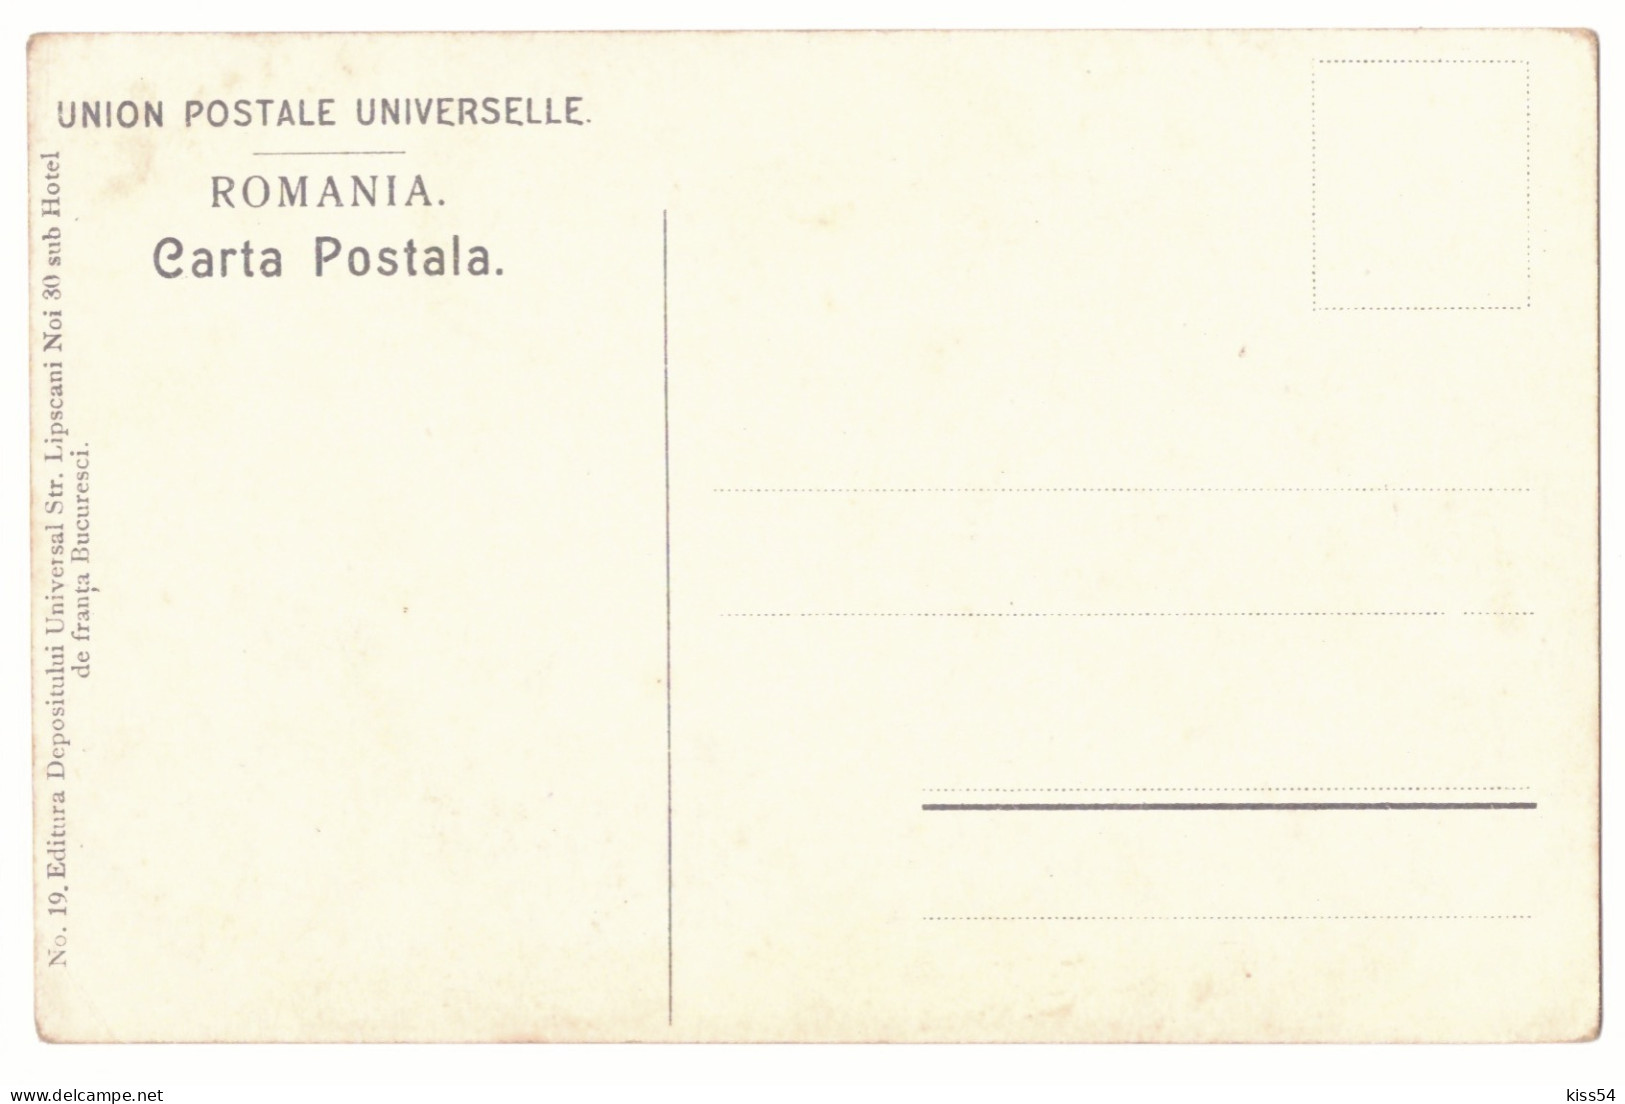 RO 40 - 21166 ETHNIC, Dansatori, Romania - Old Postcard - Unused - Roumanie